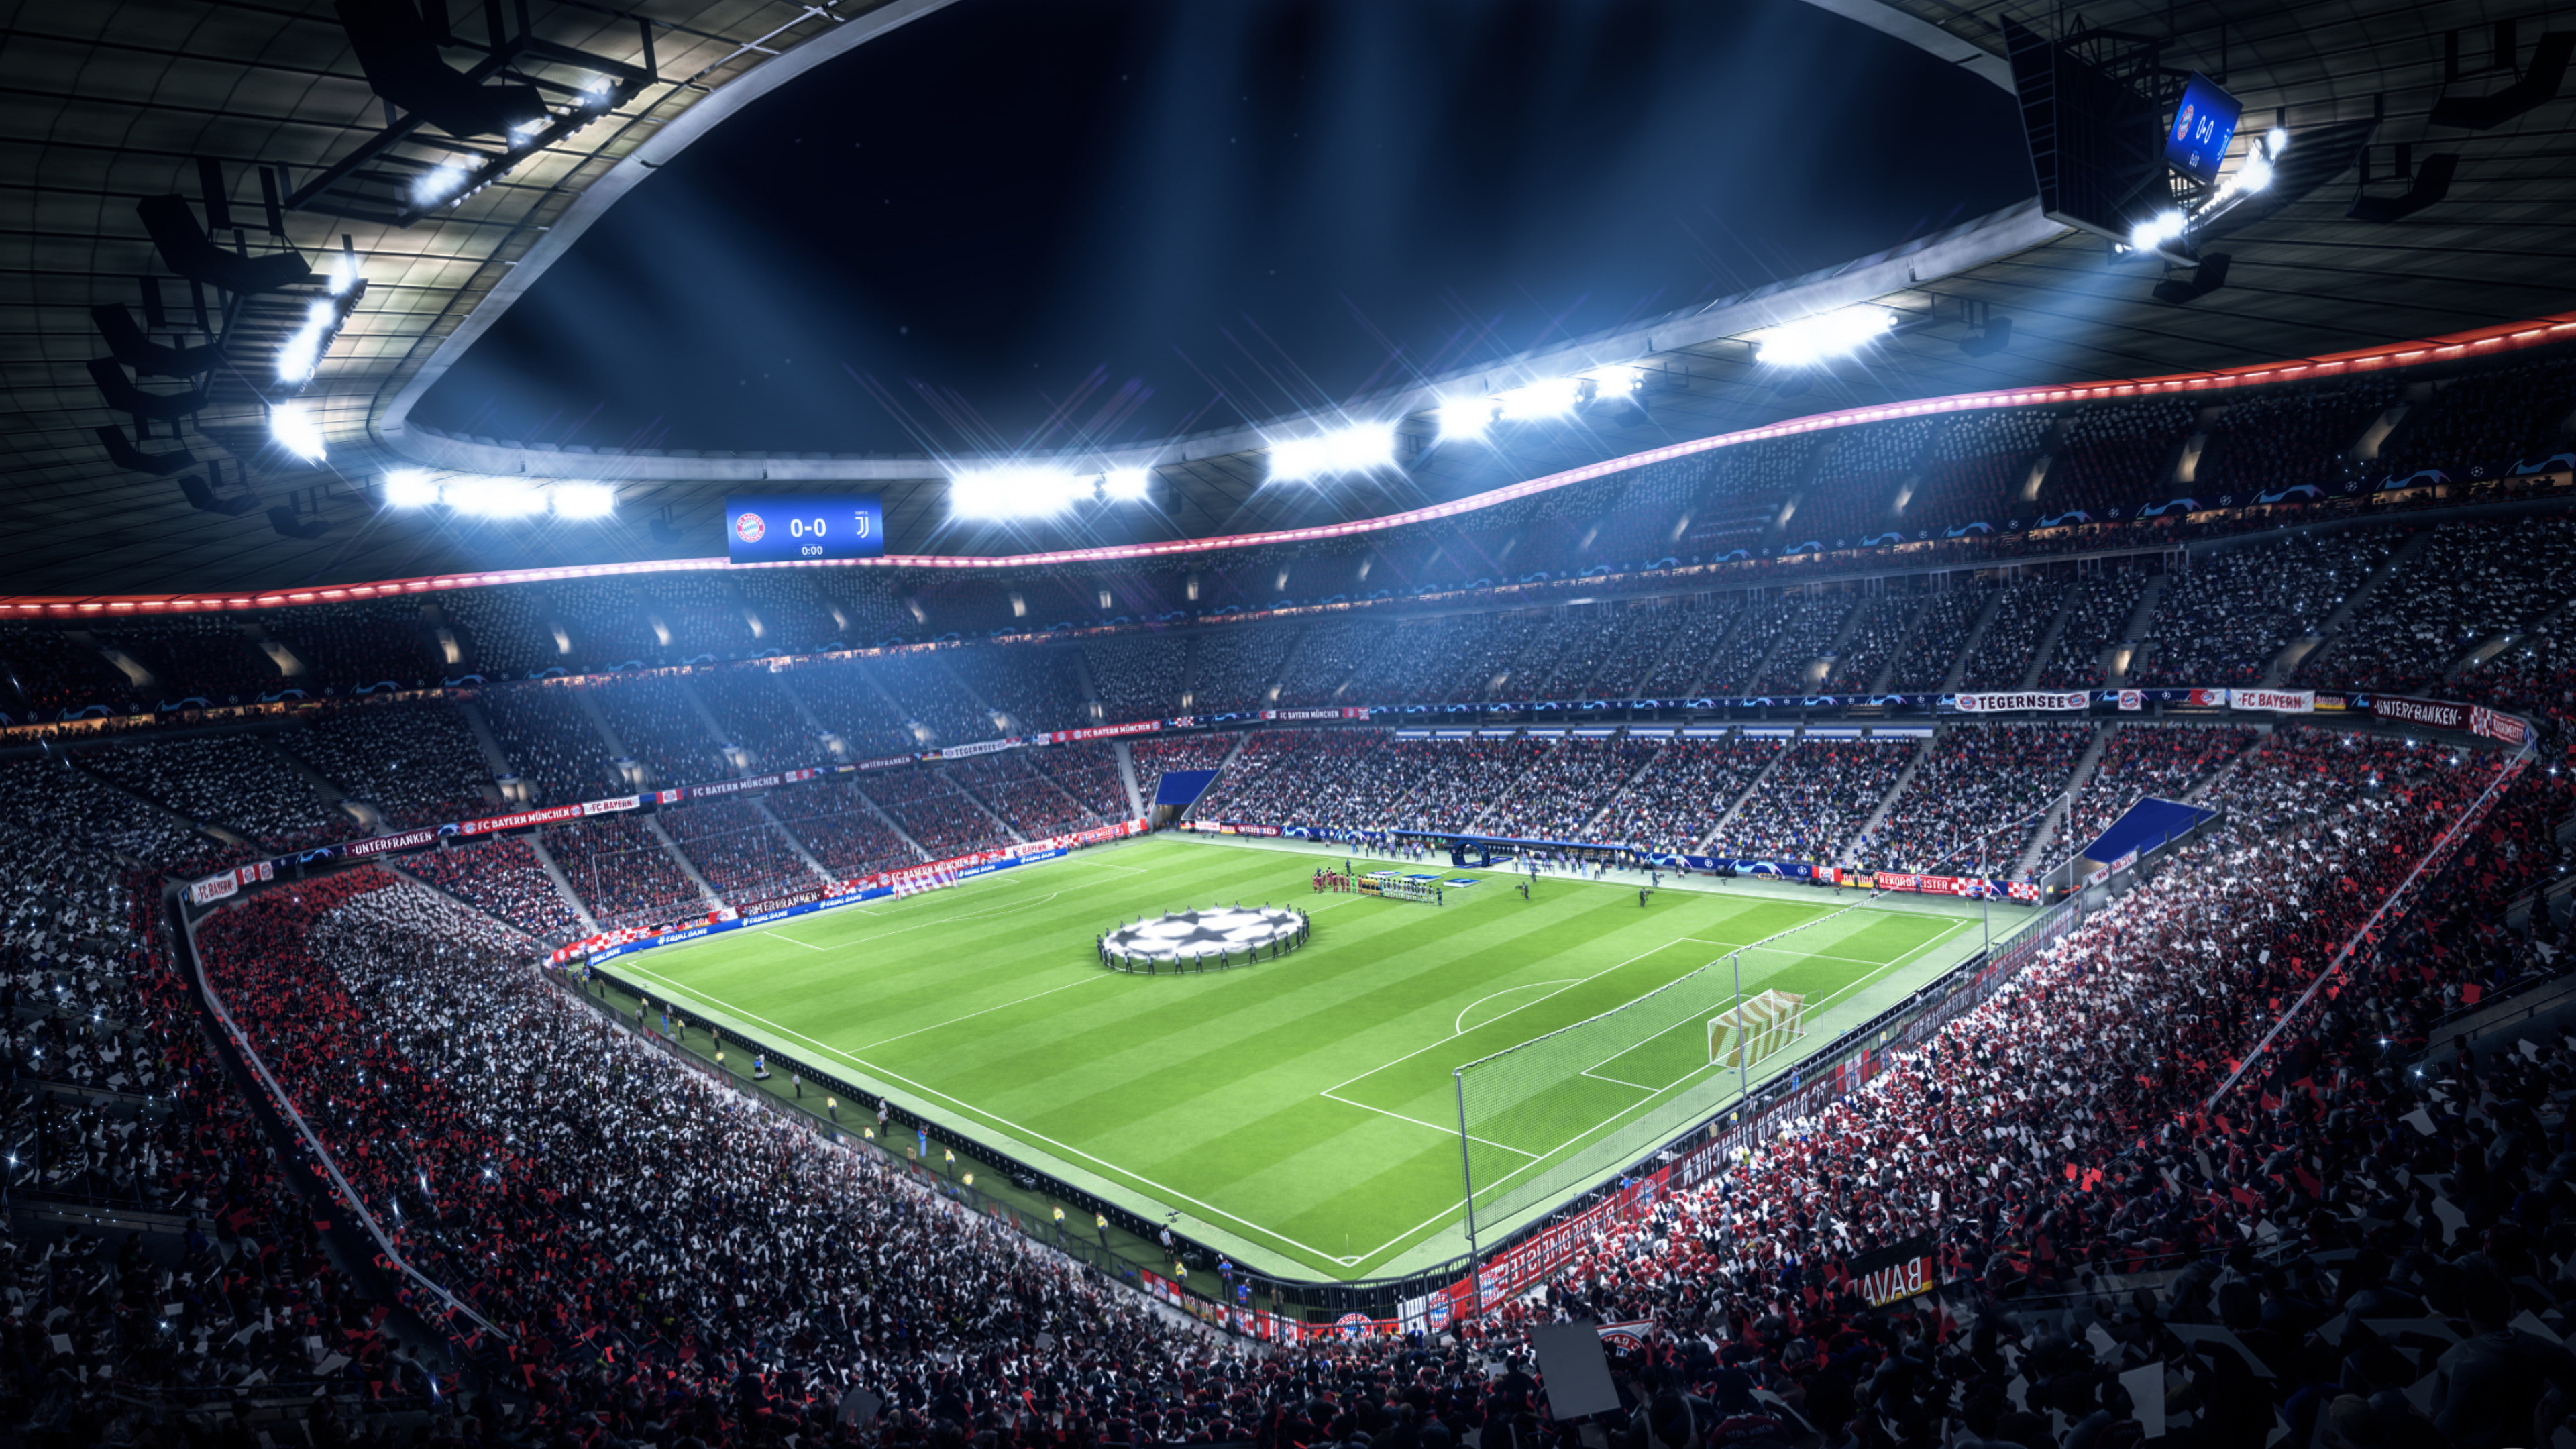 Football Stadium, FIFA 19 stadium, Gaming wallpaper, High resolution, 3840x2160 4K Desktop